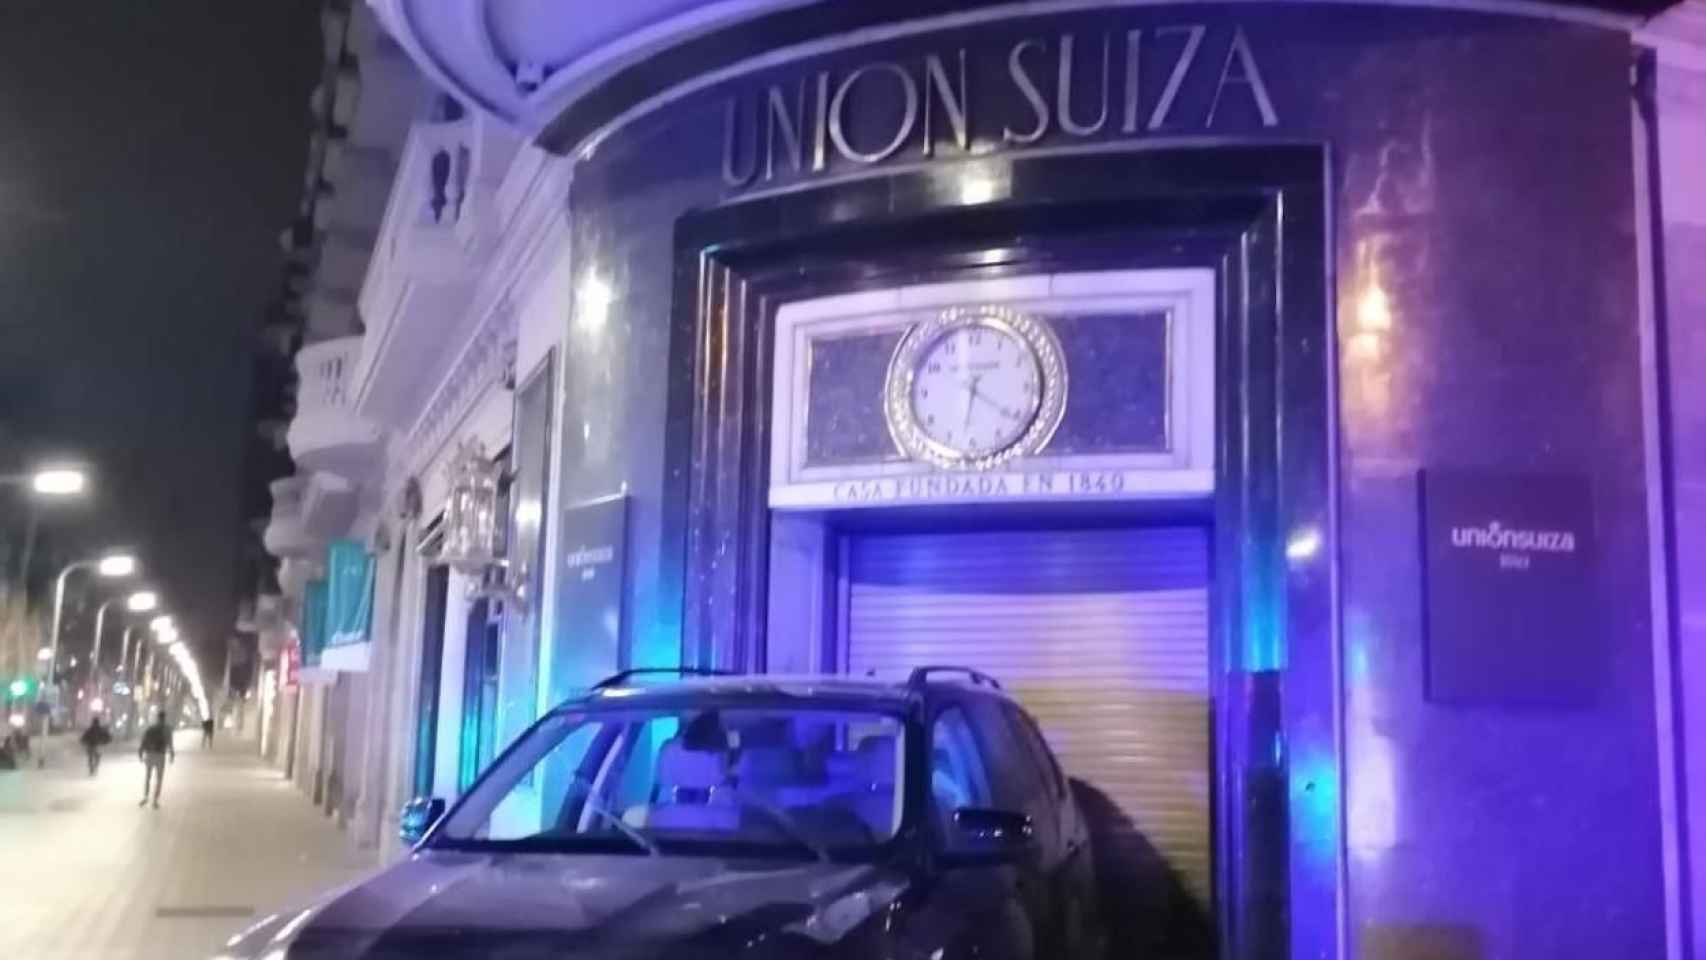 Ladrones estampan un coche contra la joyería Unión Suiza en la Diagonal / CEDIDA